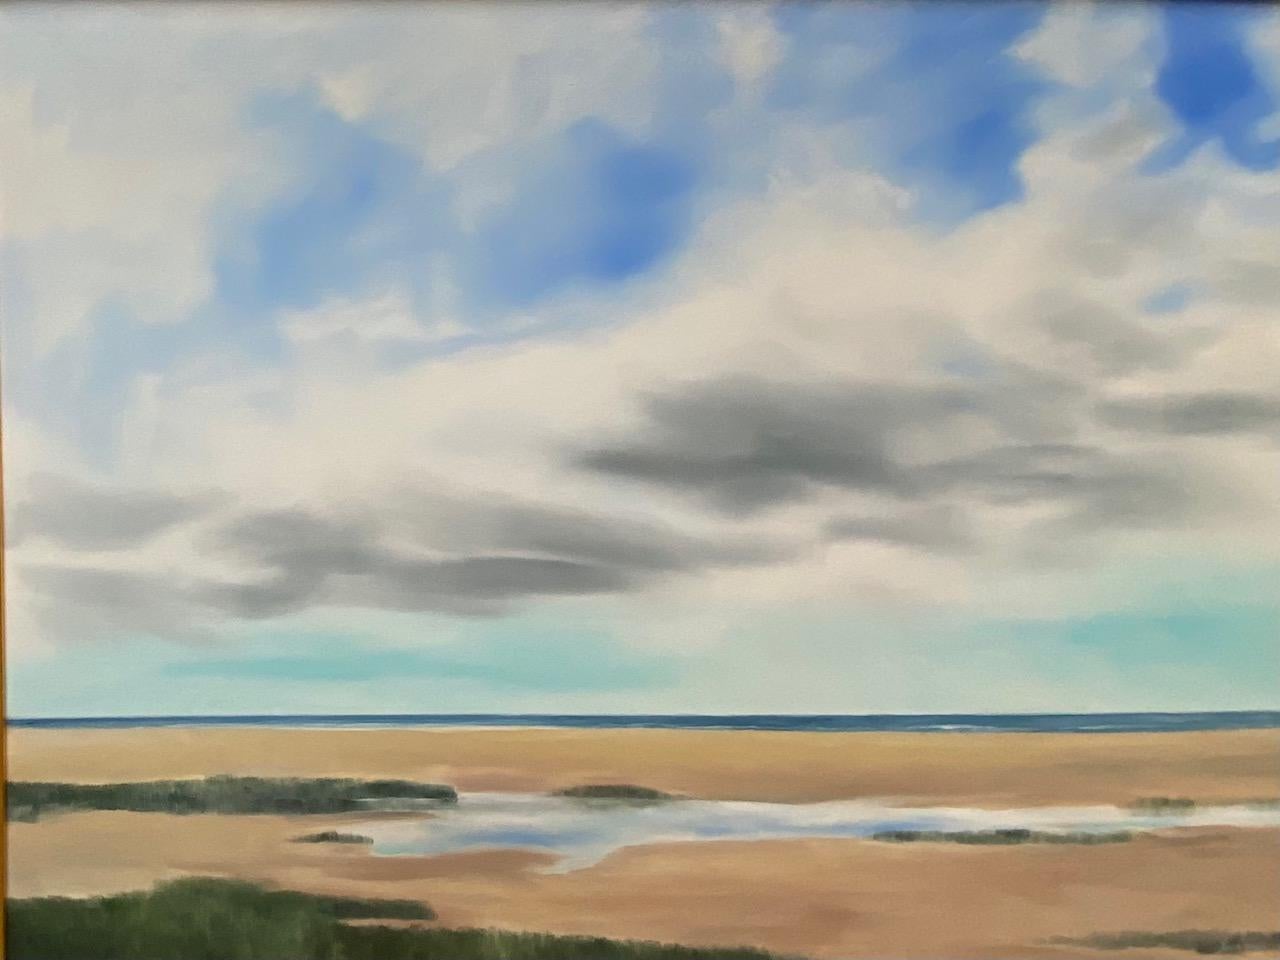 Cape Cod Dunes, original 36x48 contemporary marine landscape - Contemporary Painting by Rinaldo Skalamera